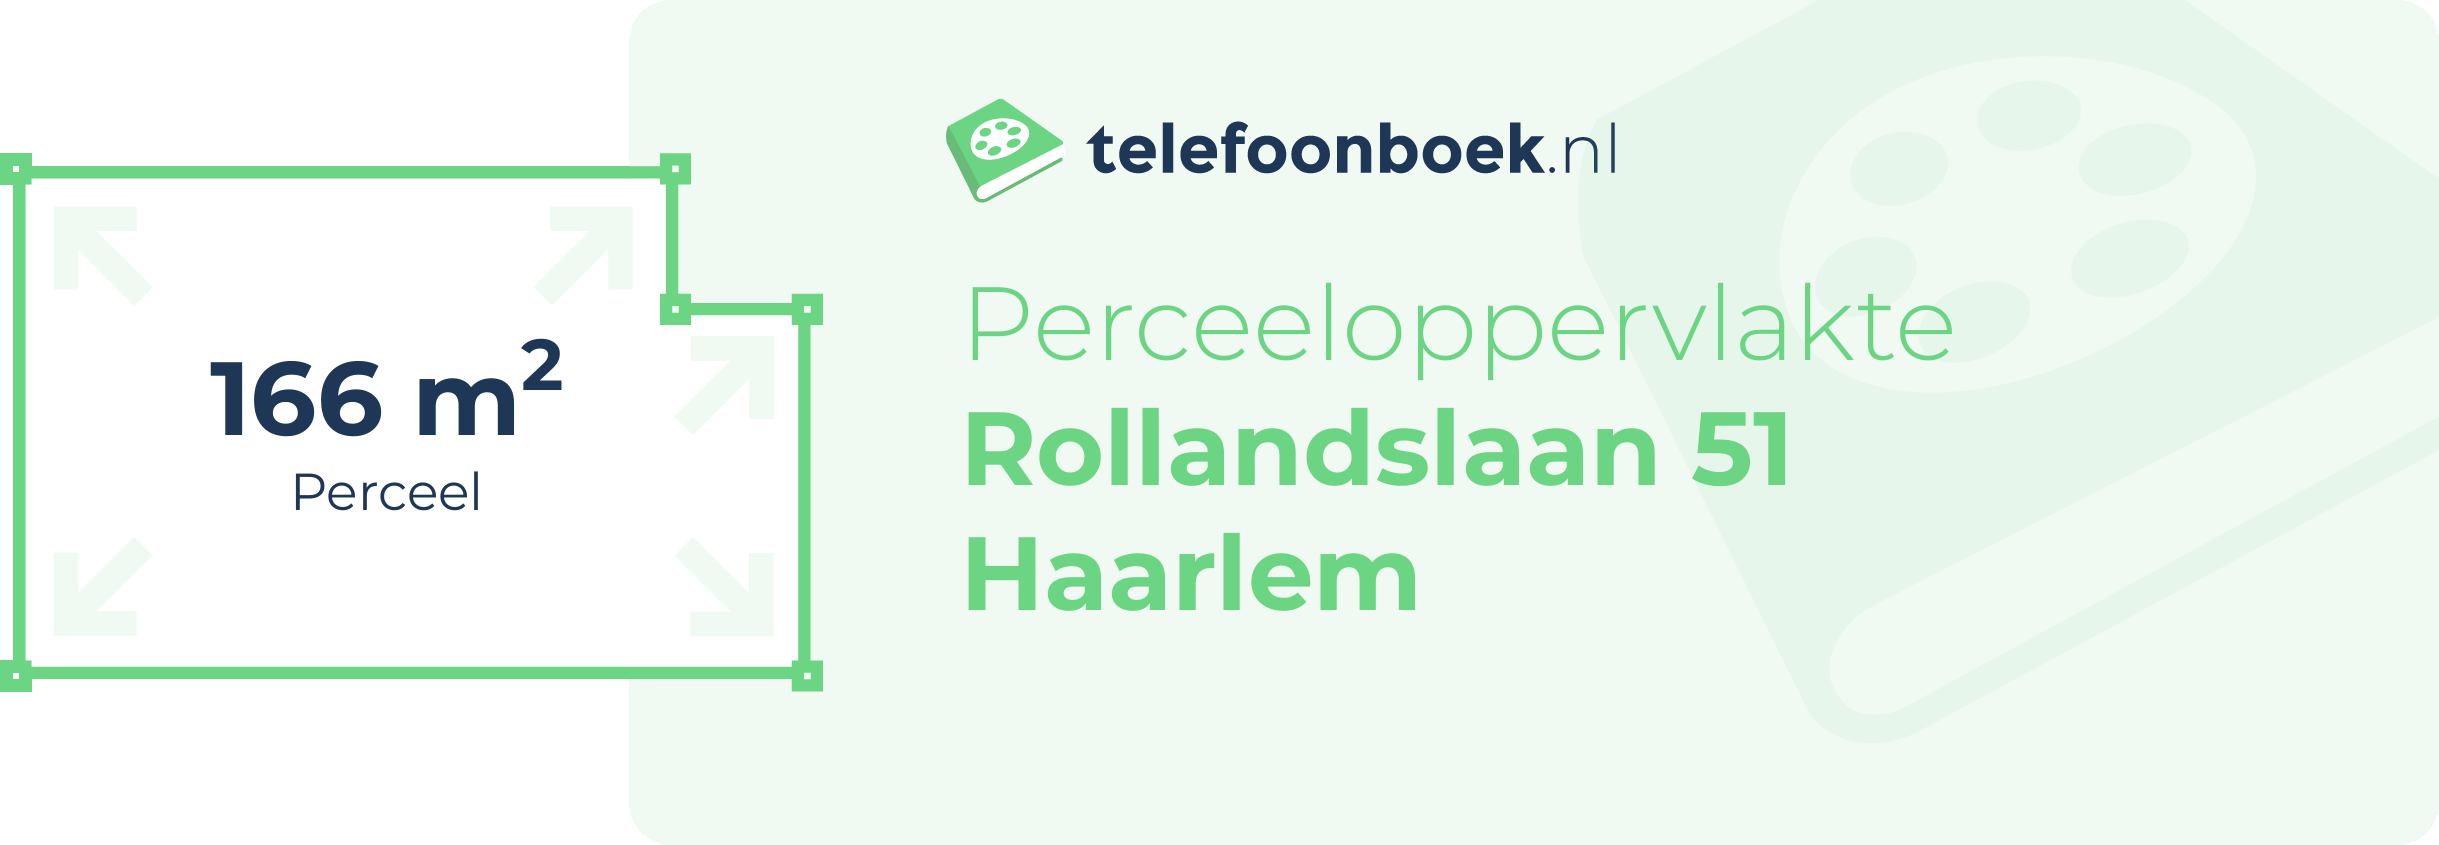 Perceeloppervlakte Rollandslaan 51 Haarlem